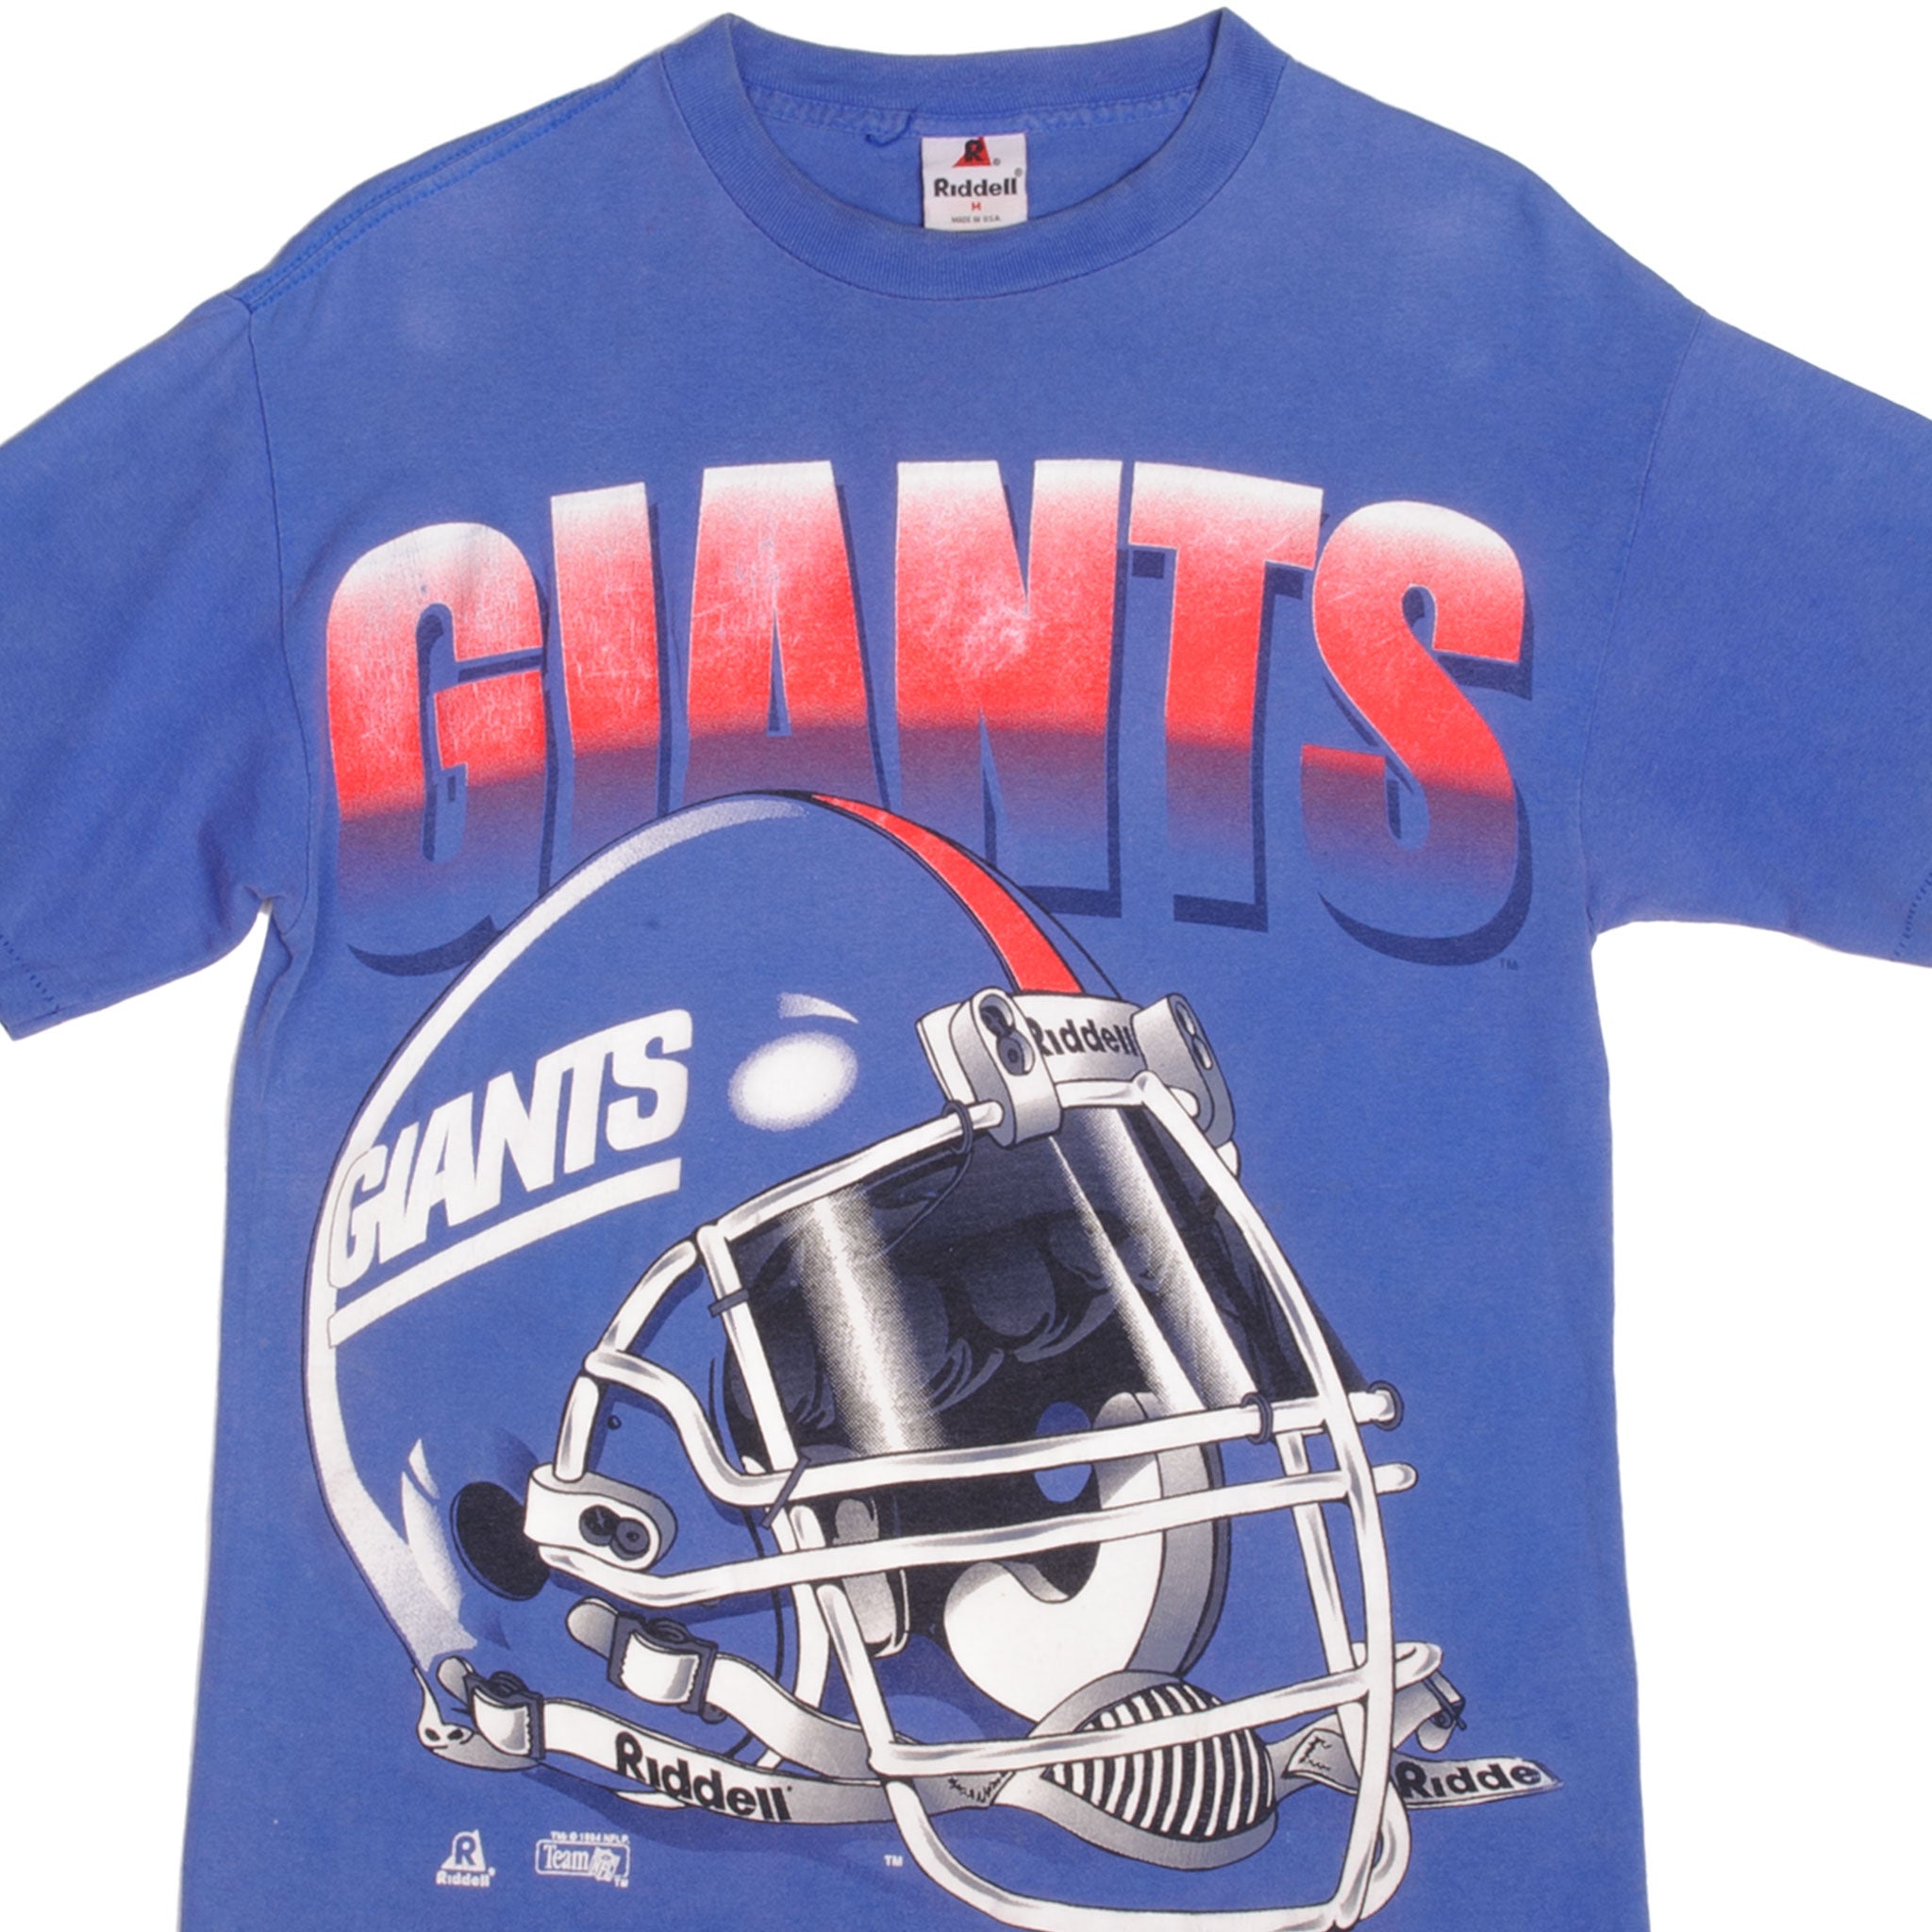 New York Giants Apparel, New York Giants Merchandise, NY Giants